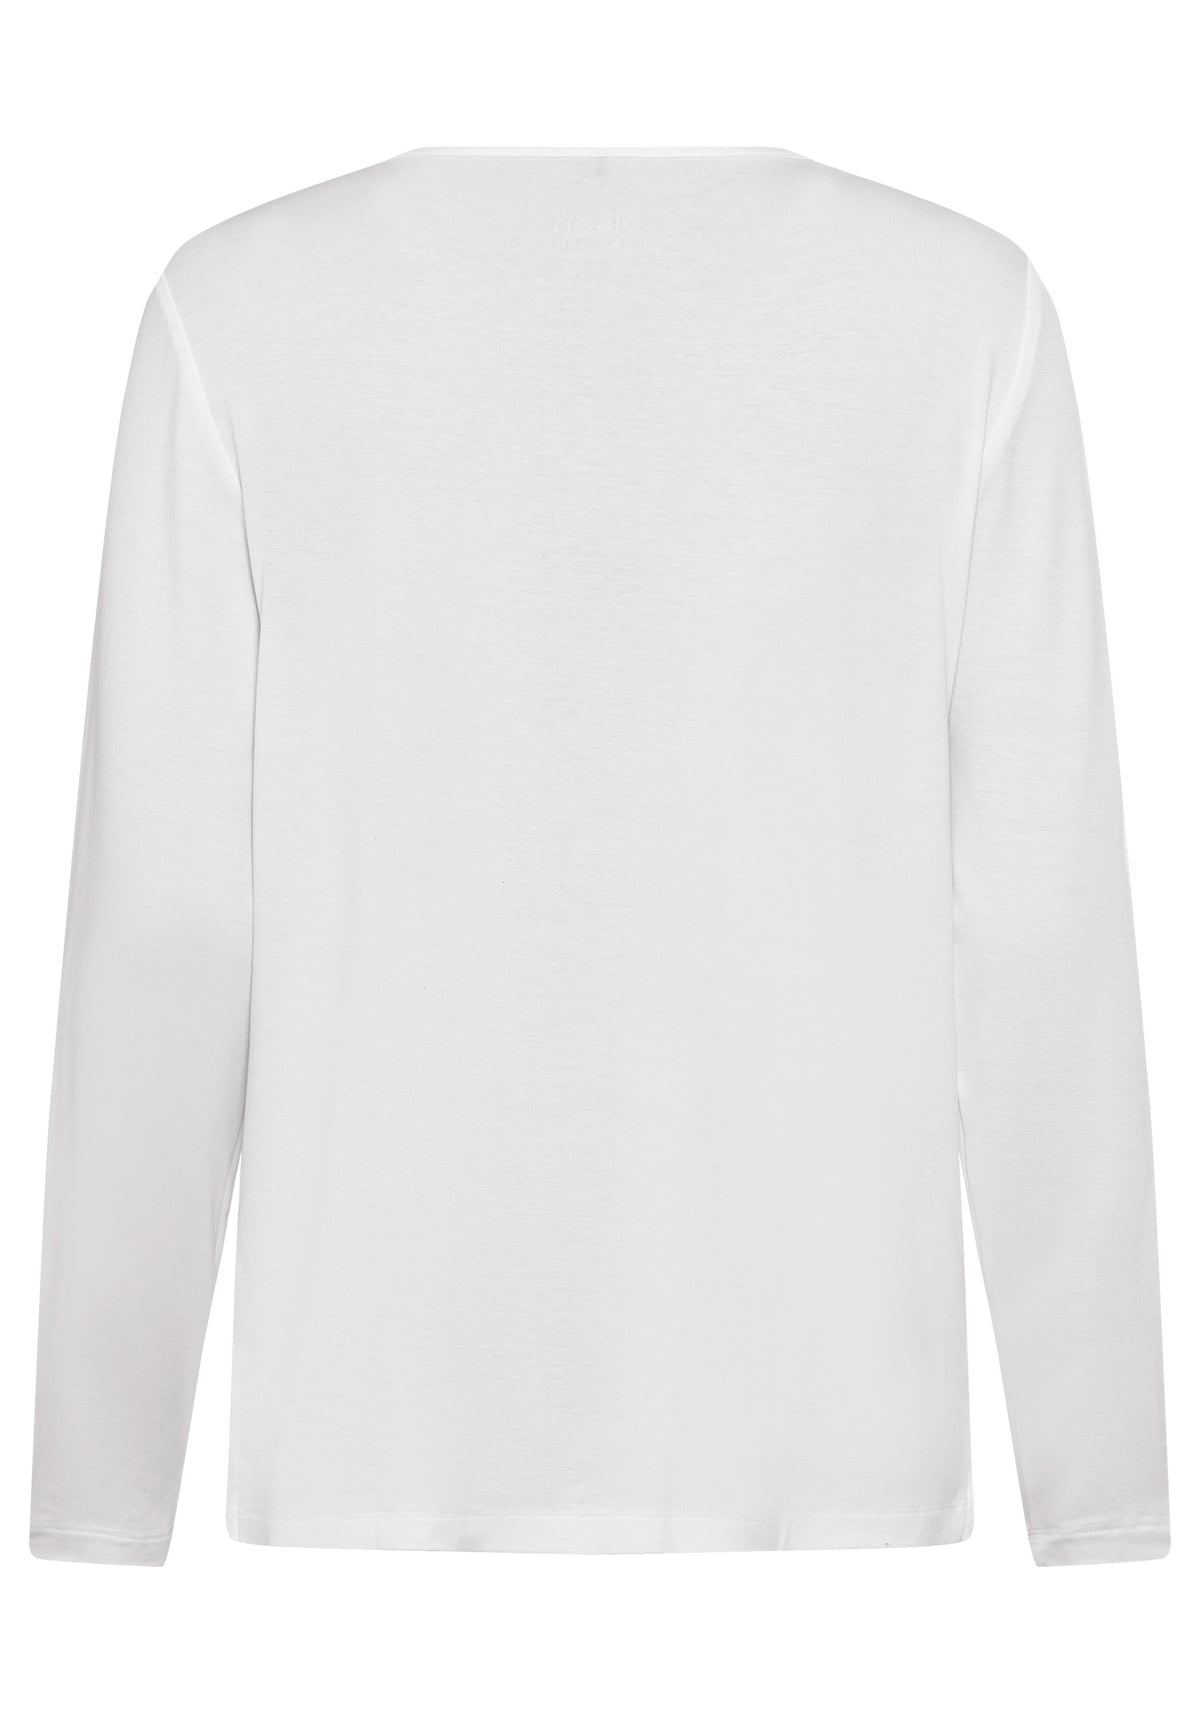 Long Sleeve Keyhole Neckline Embellished T-Shirt containing LENZING™ ECOVERO™ Viscose